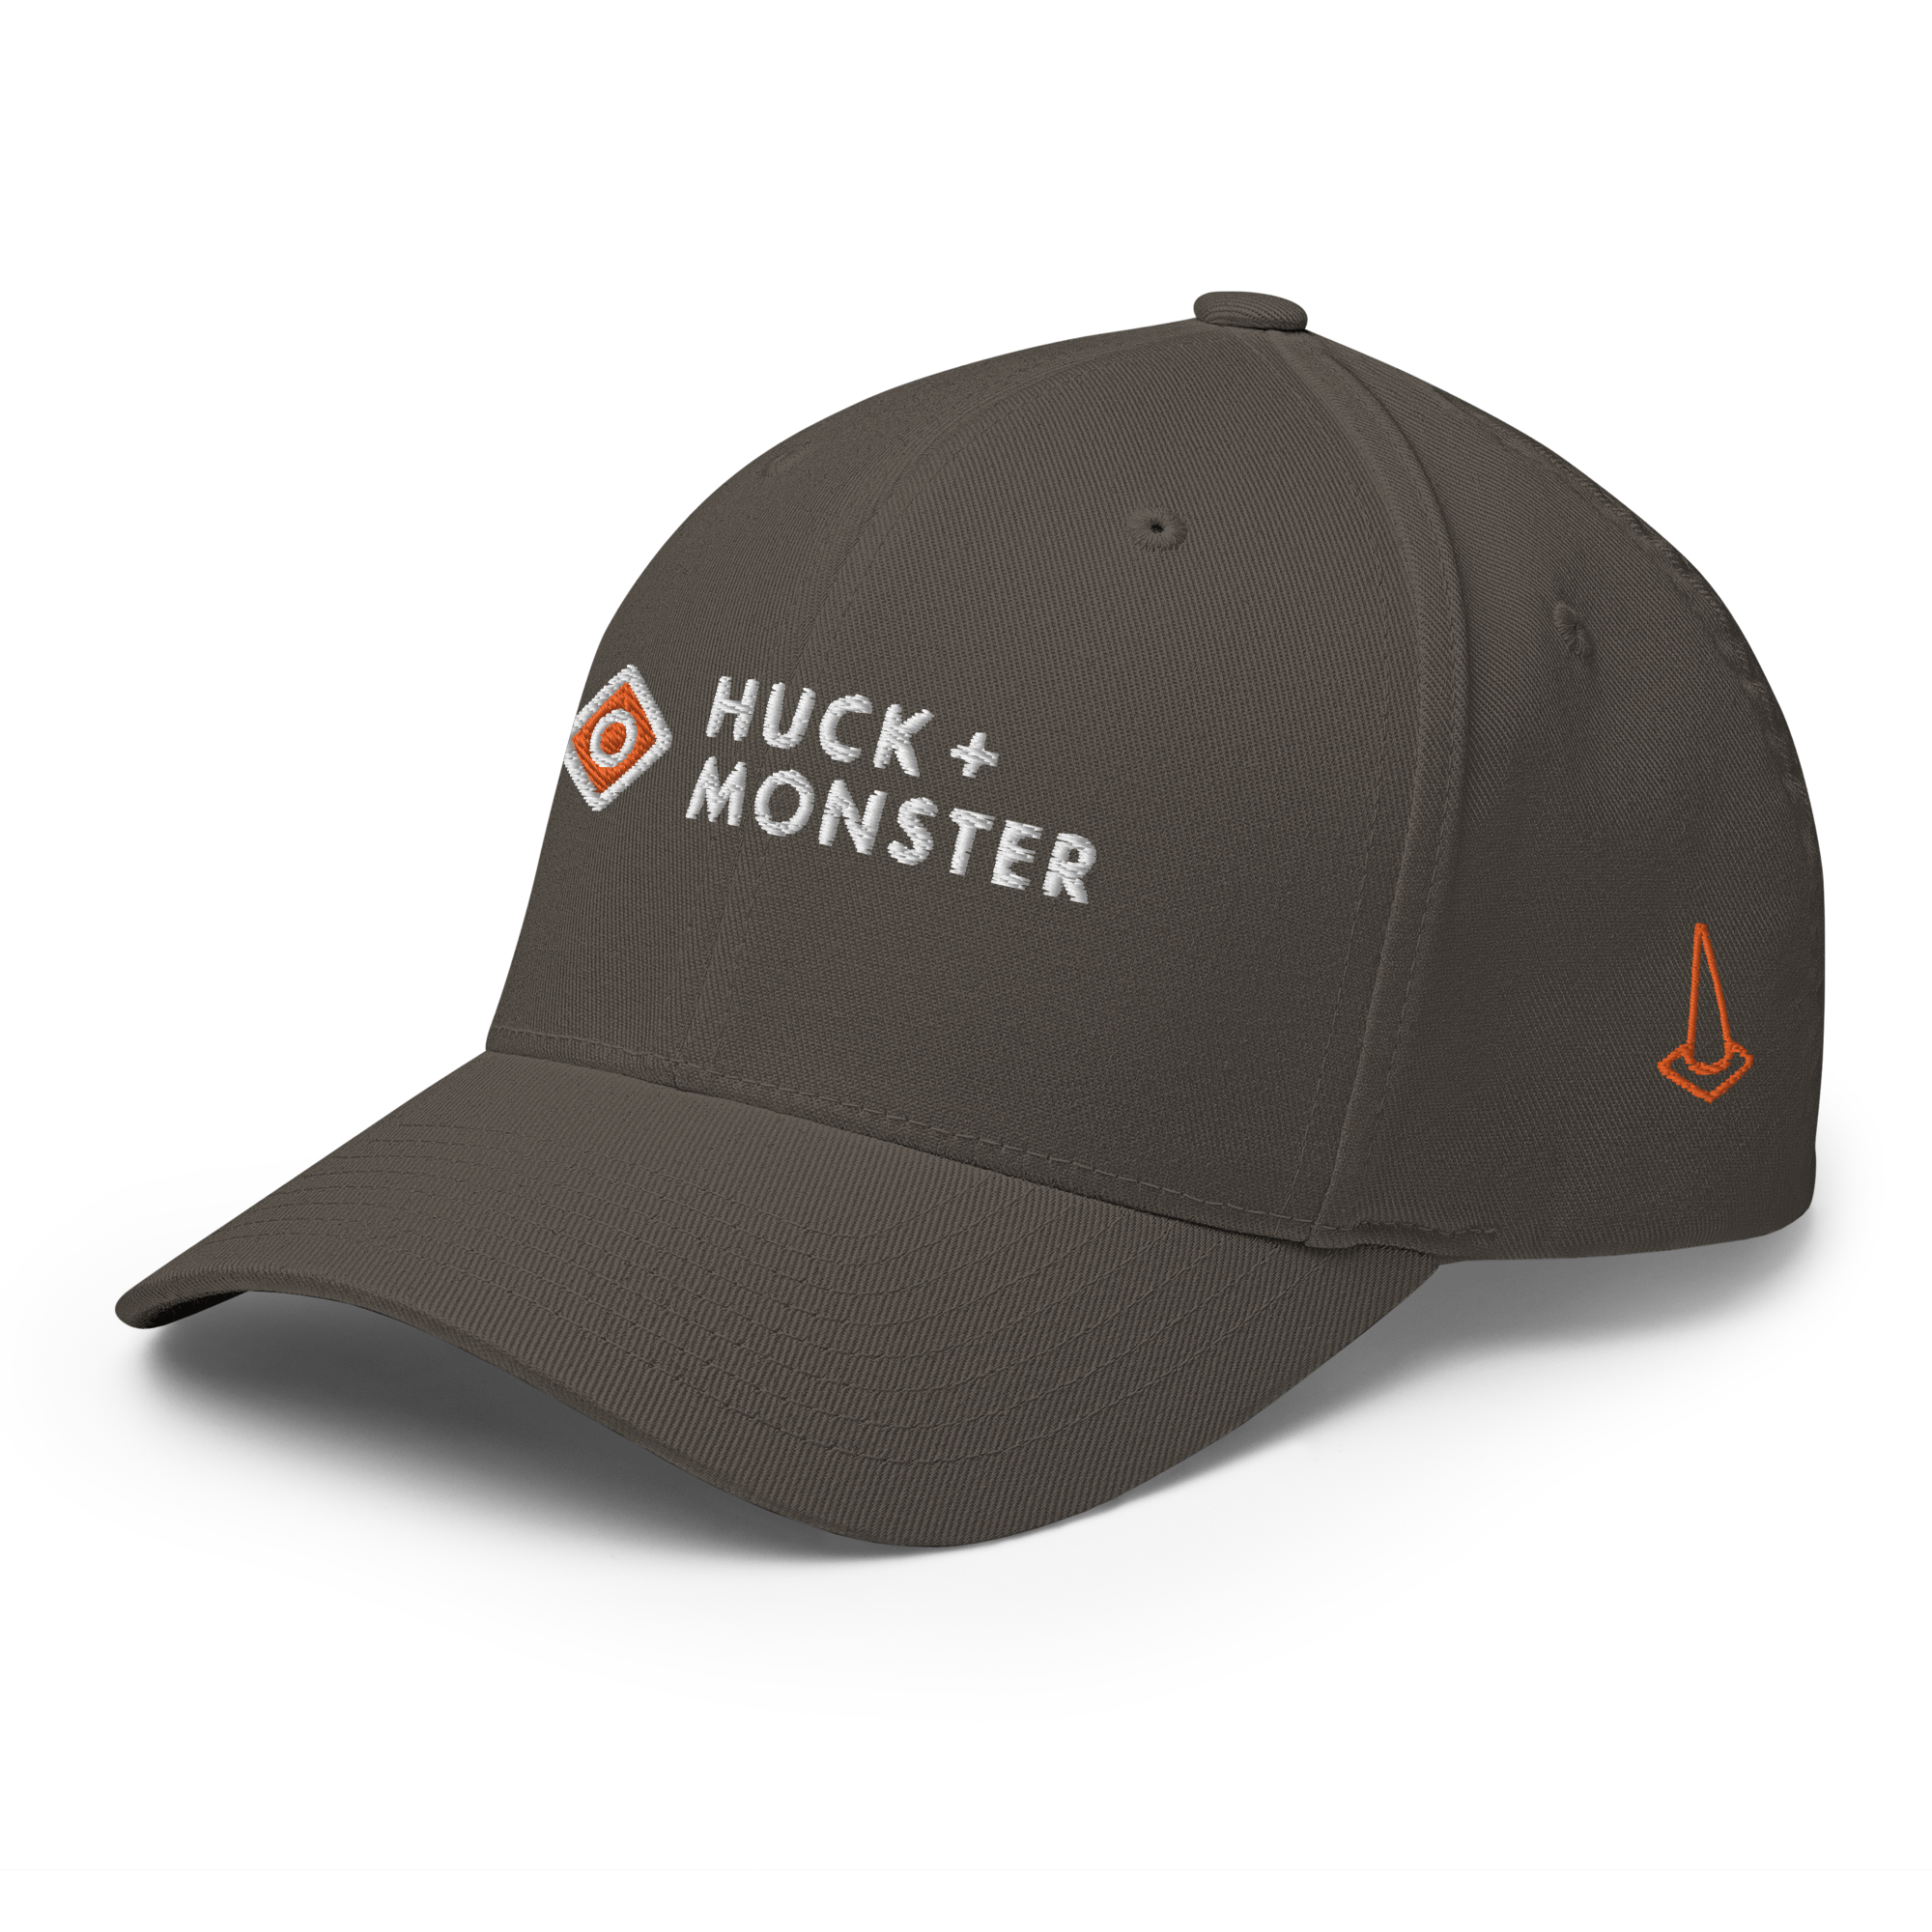 Monster Cap Huck + Player